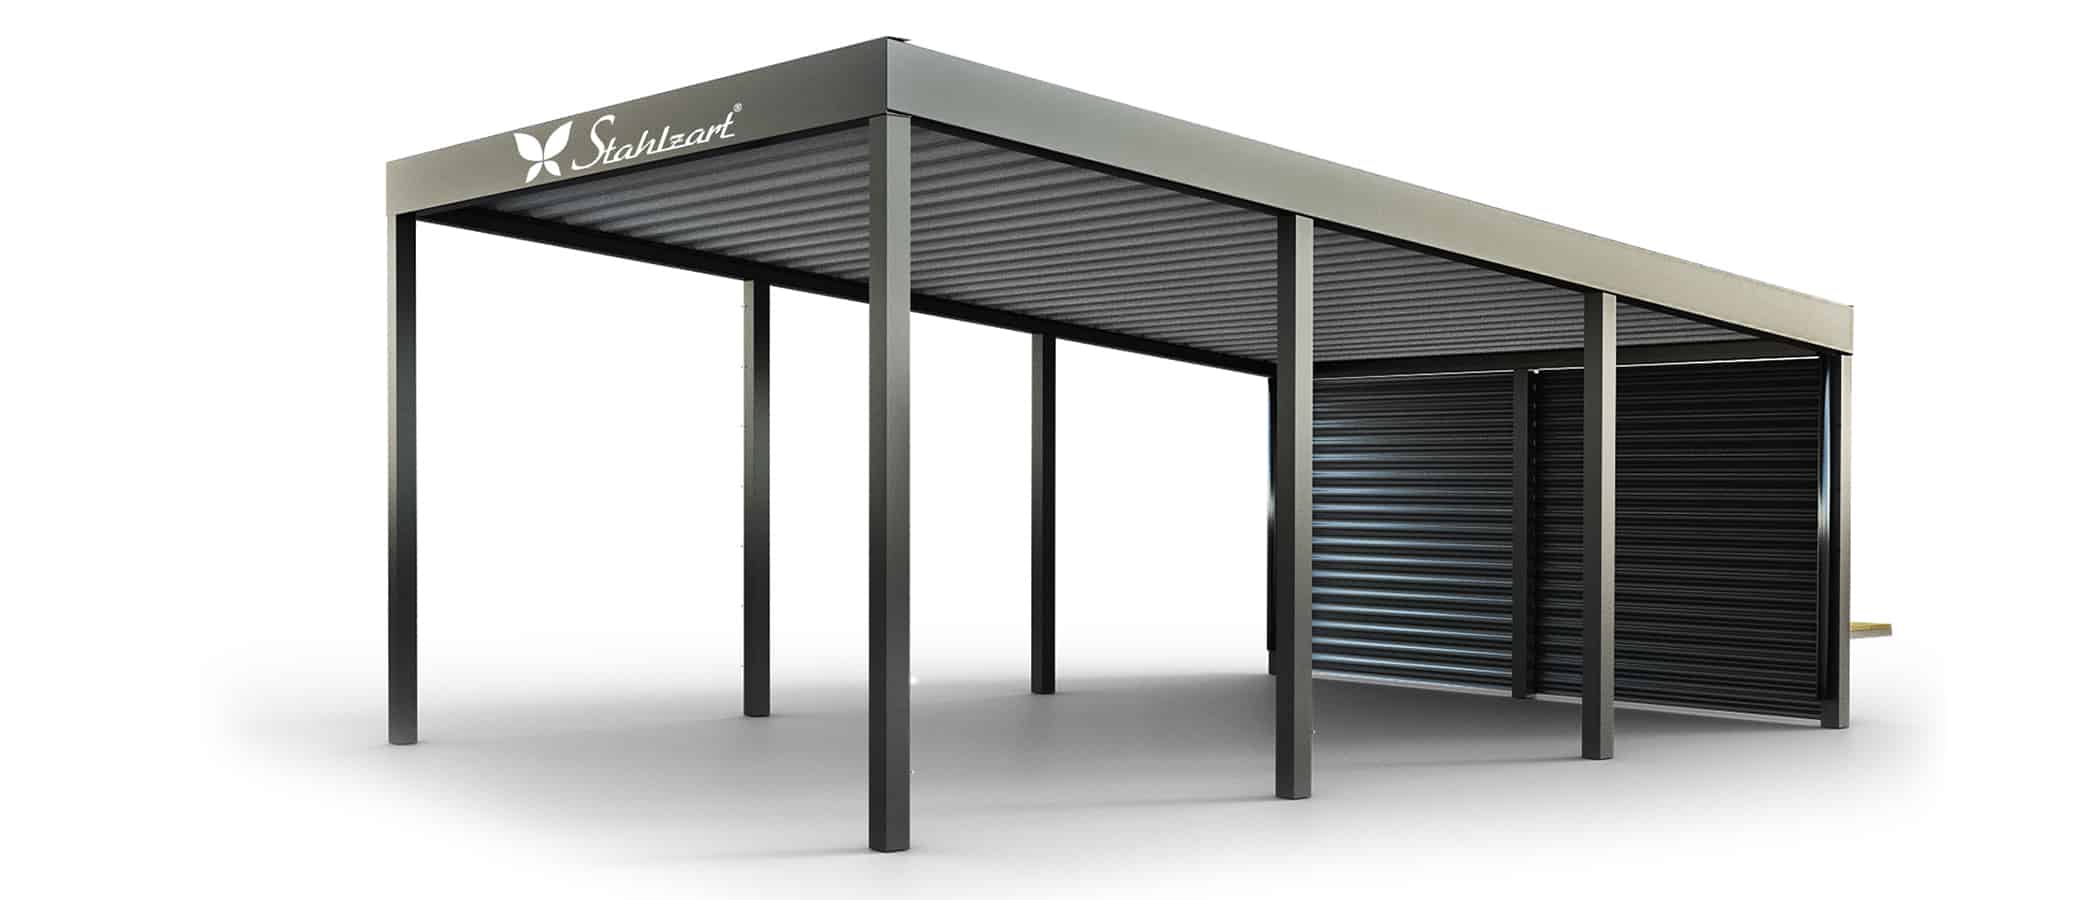 solar-carport-mit-pultdach-carports-solarcarport-pultdach-carportdach-design-strom-angebot-photovoltaikanlage-module-solardach-metall-stahl-einzelcarport-mit-stahlblech-seitenwand-stahlzart